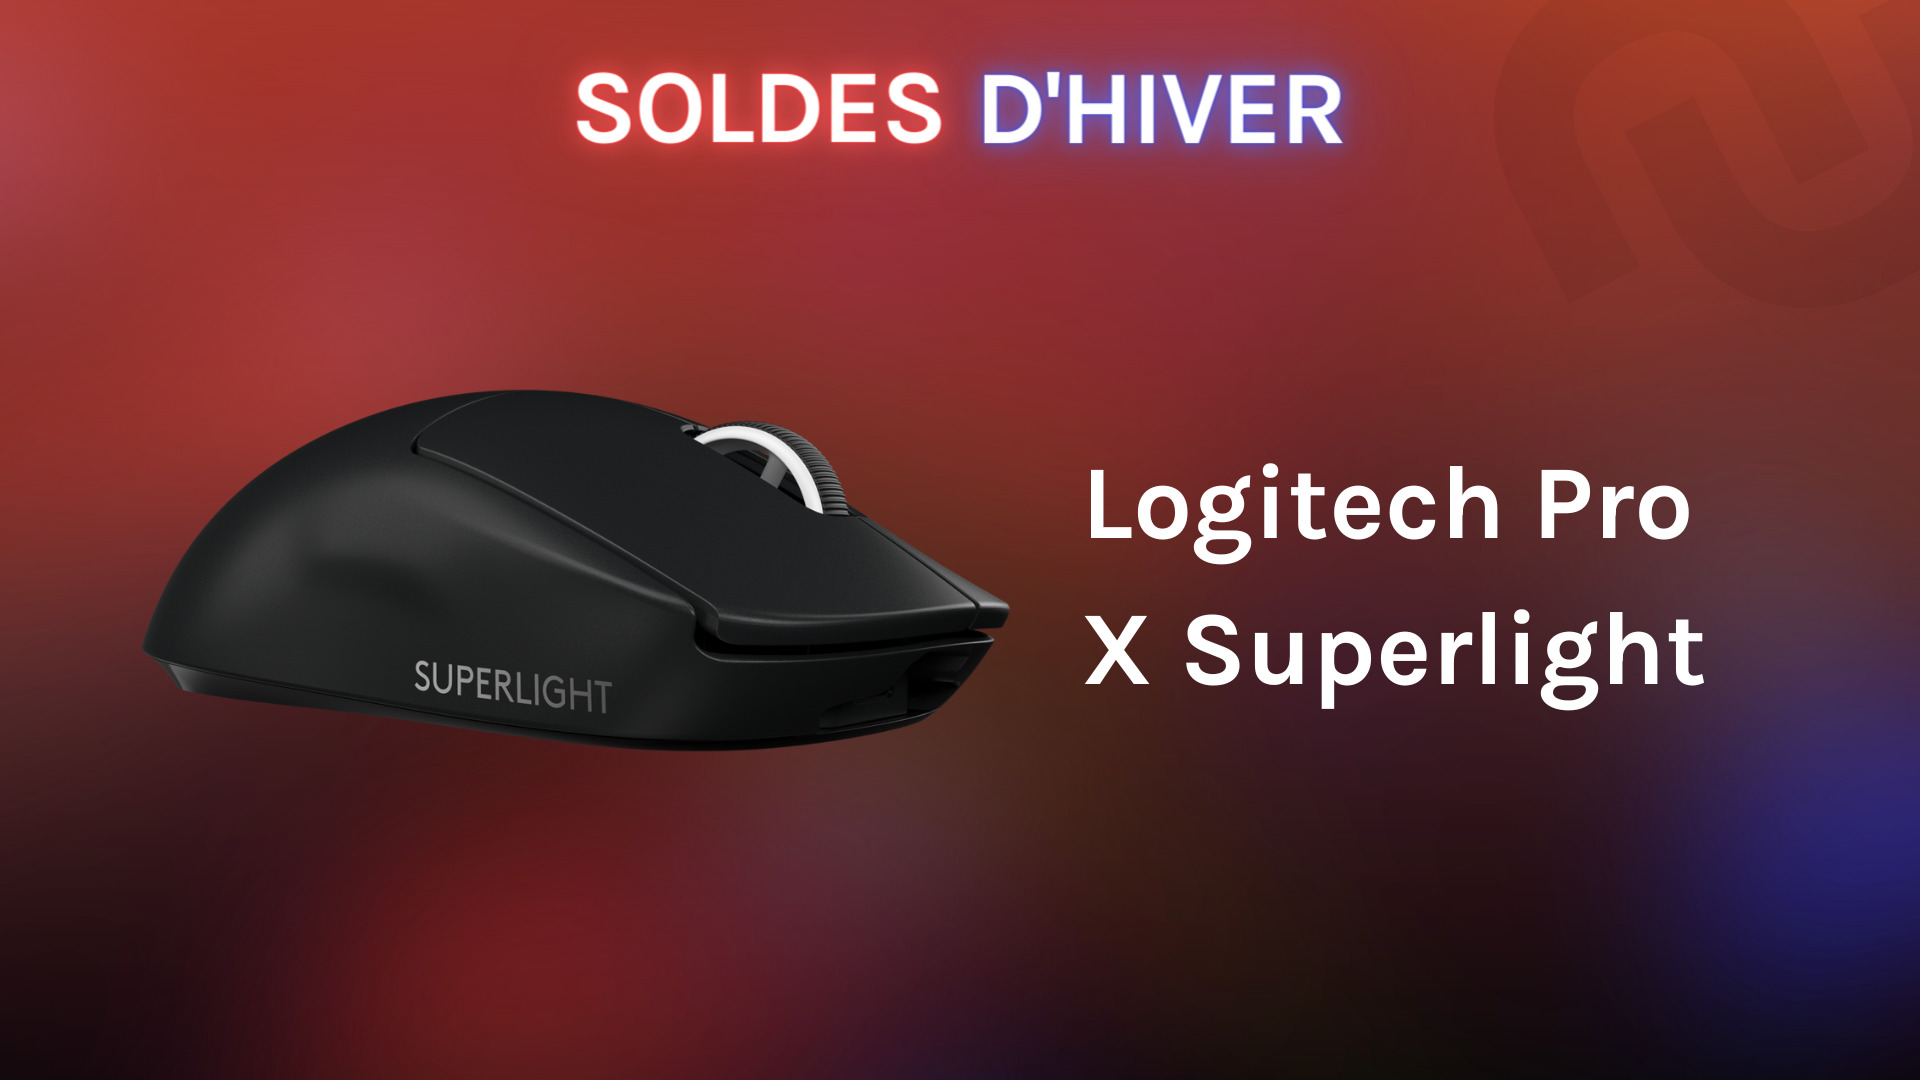 La souris gaming Pro X Superlight de Logitech en promo pendant les